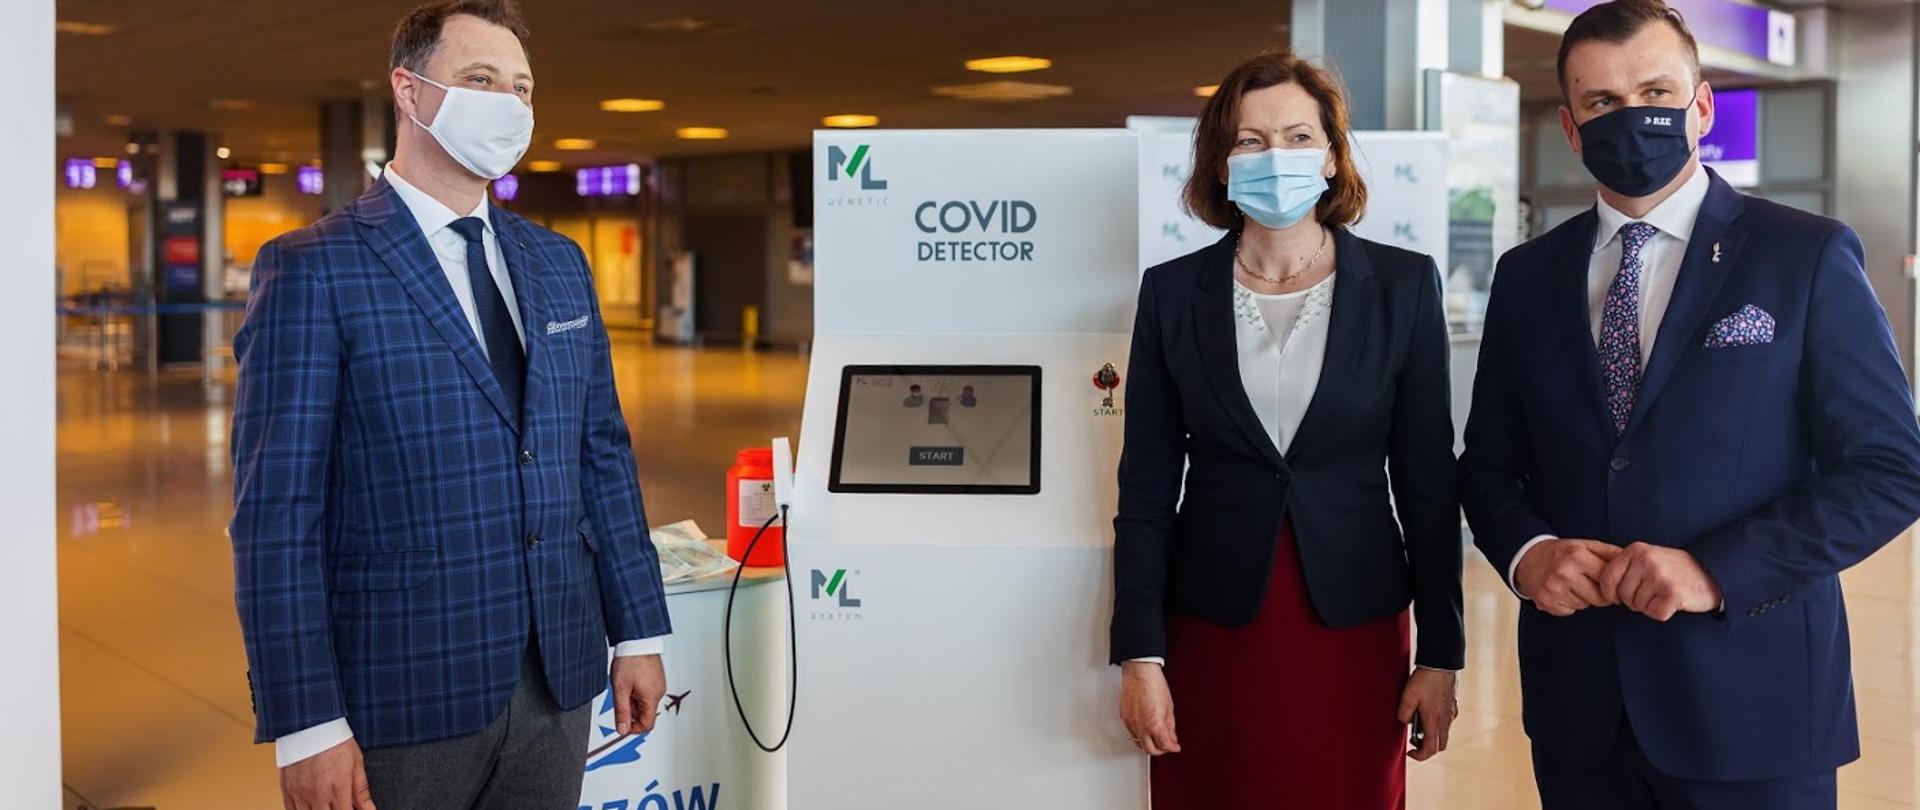  COVID Detector zostanie udostępniony pasażerom podrzeszowskiego lotniska